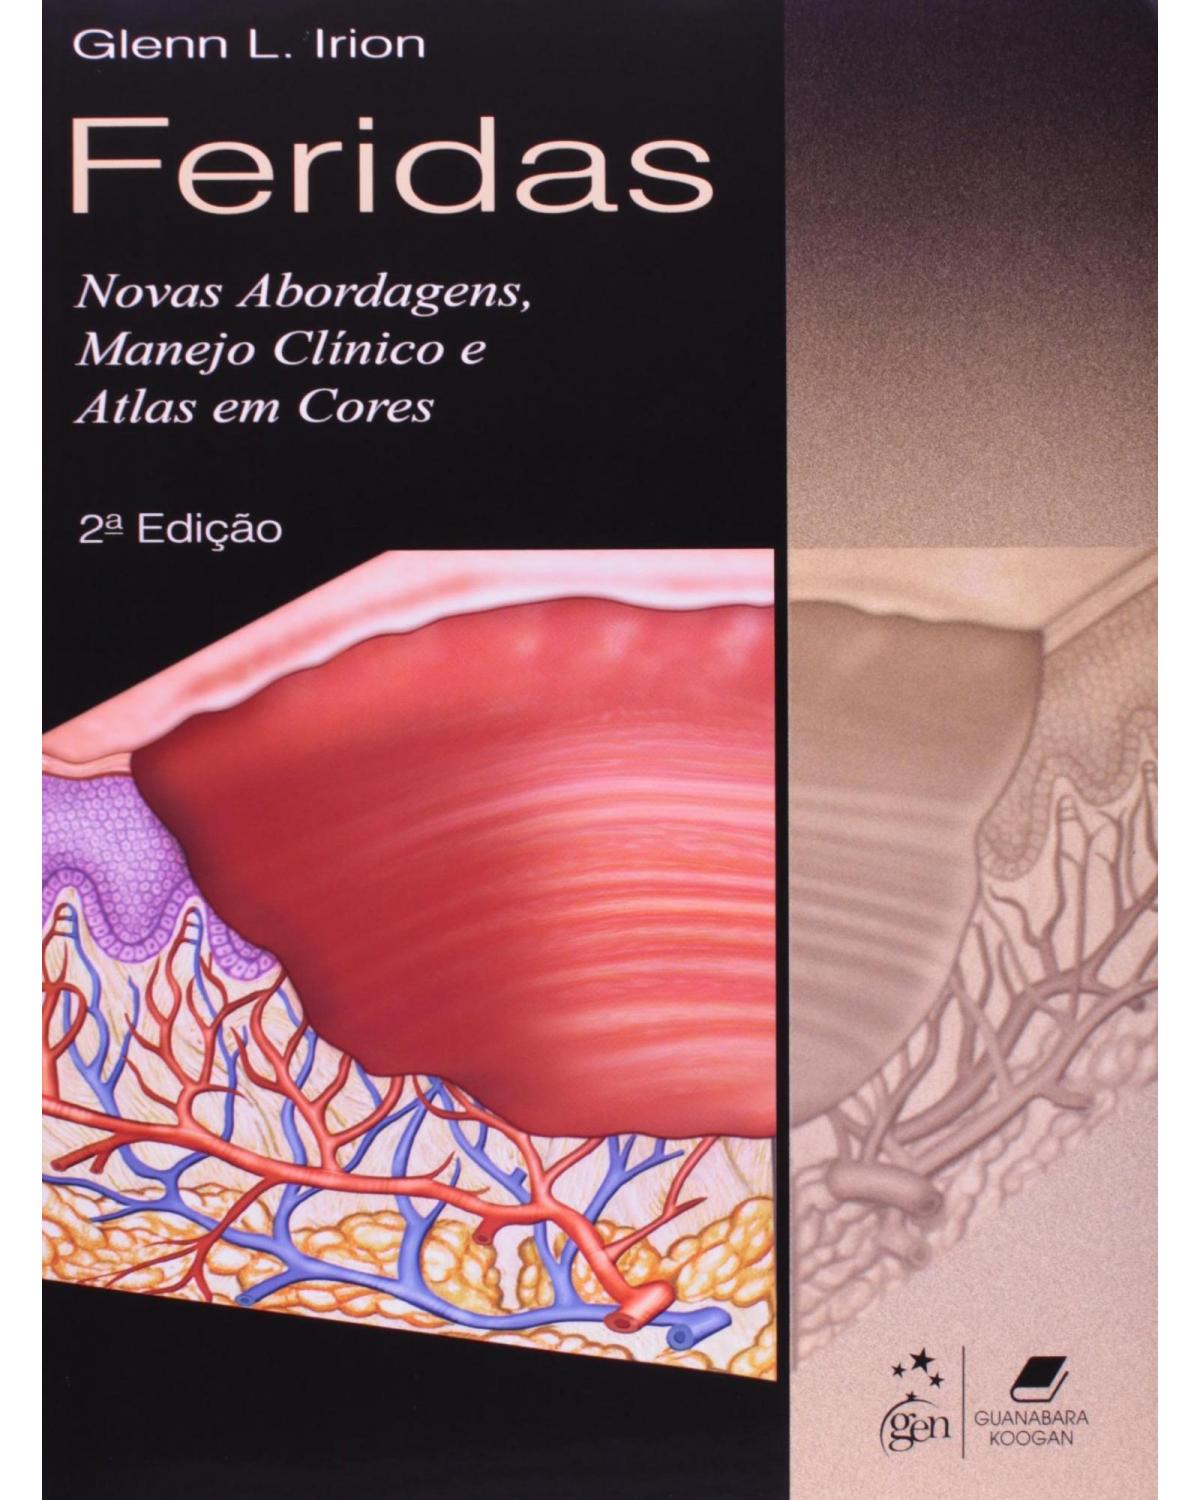 Feridas - Novas abordagens, manejo clínico e atlas em cores - 2ª Edição | 2012